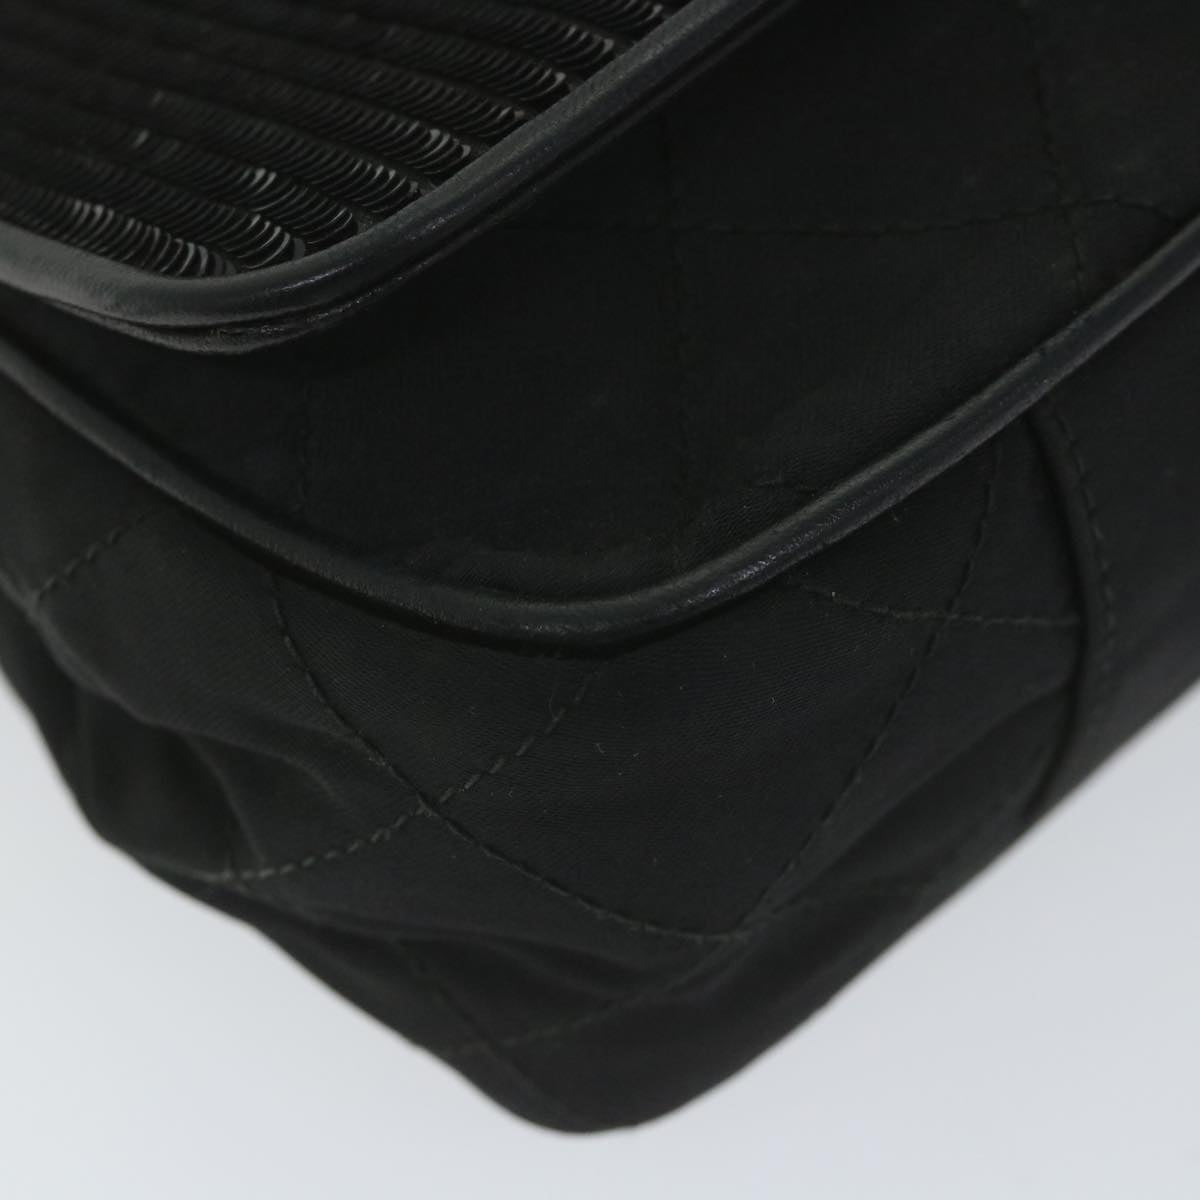 CHANEL Sequin Chain Shoulder Bag Nylon Black CC Auth bs9682